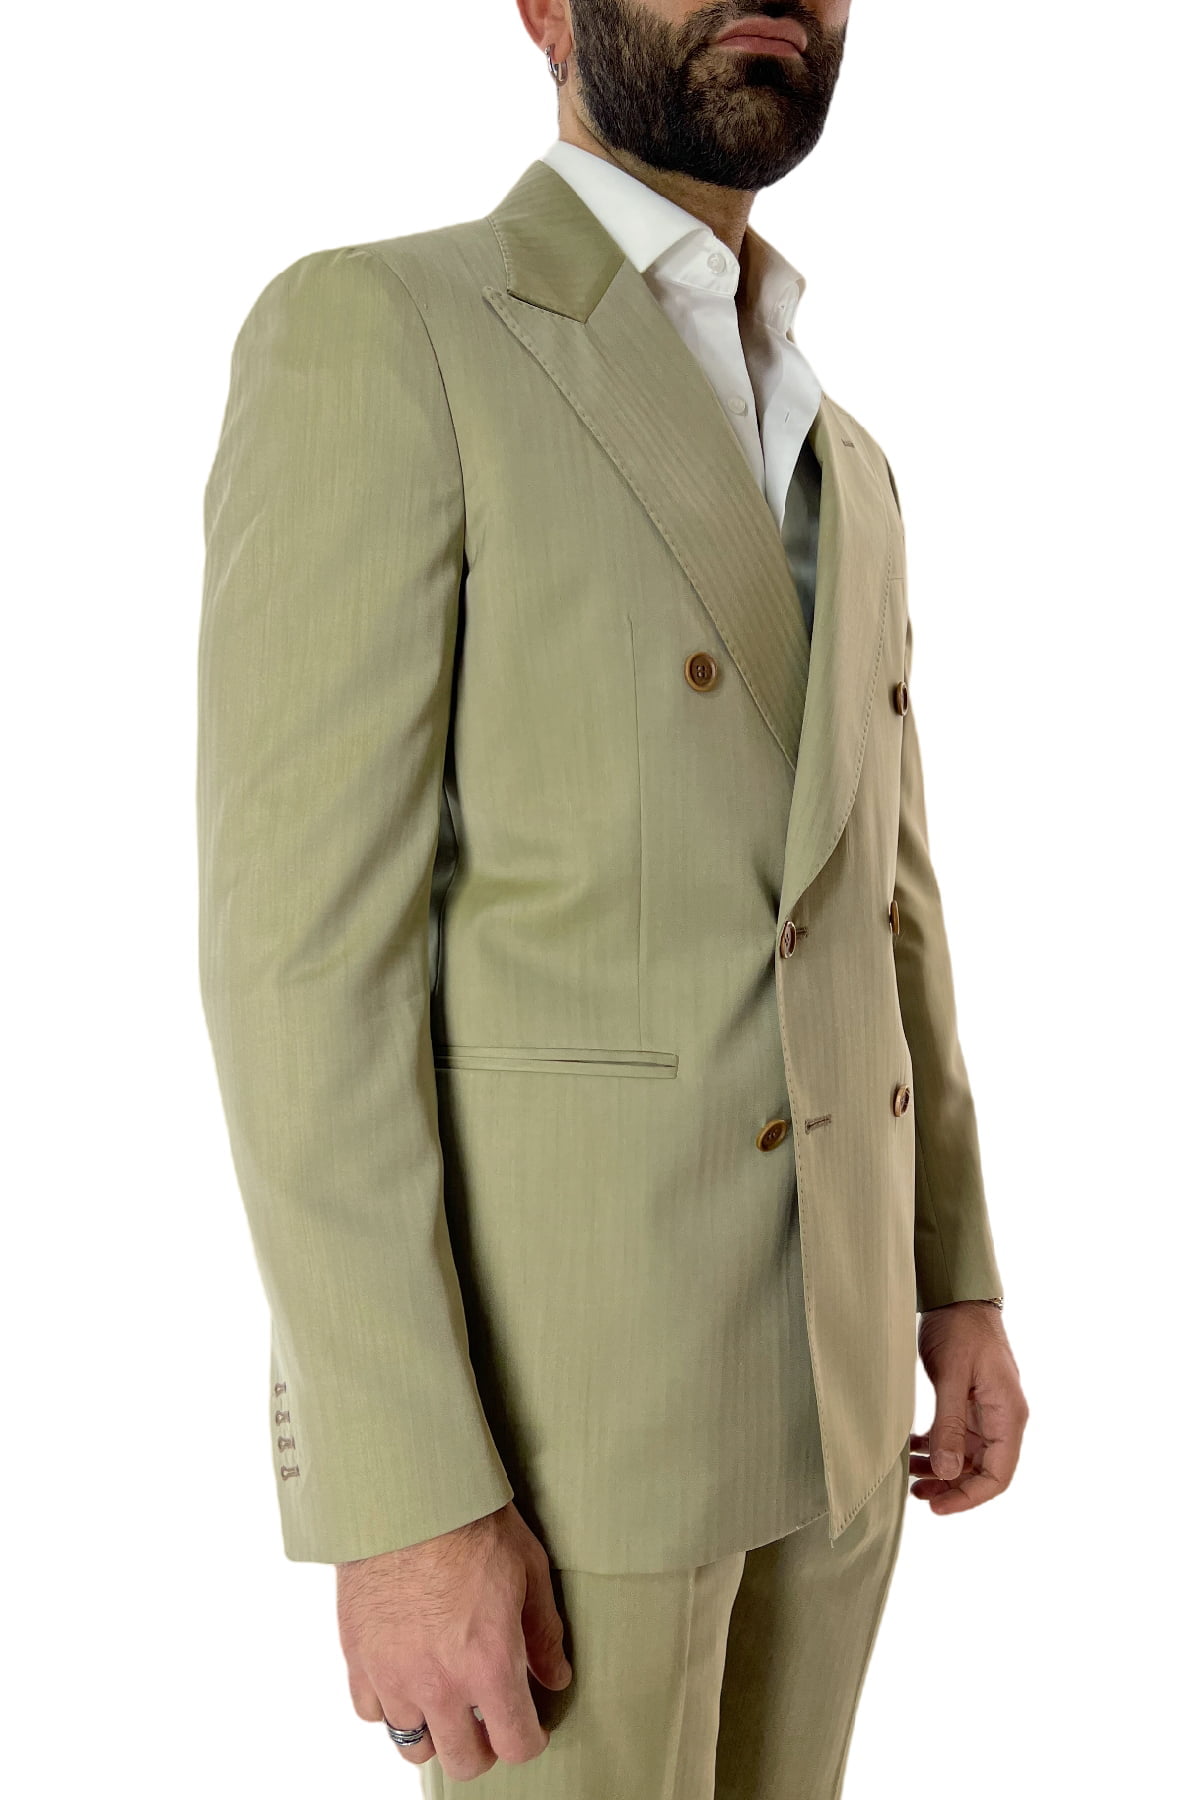 Abito uomo Verde chiaro Solaro con giacca doppiopetto e pantalone vita alta in fresco lana e seta Holland & Sherry